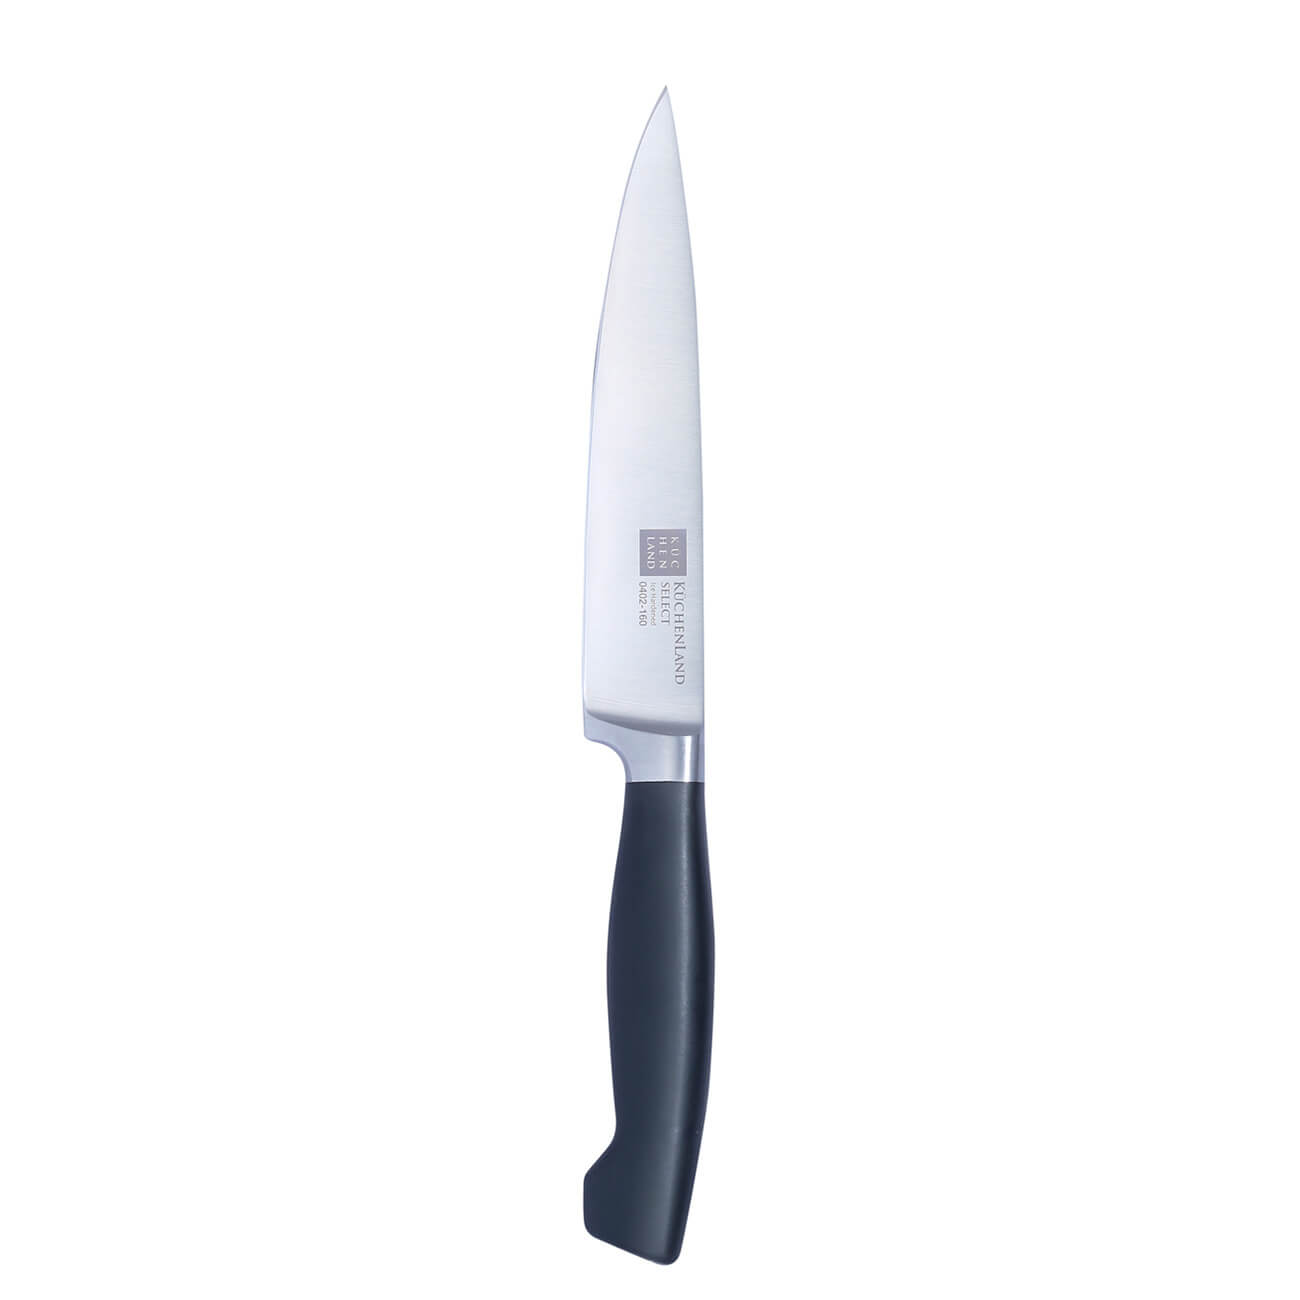 Kuchenland Нож для нарезки, 16 см, сталь/пластик, Select инструменты для моделирования и придания формы набор 5 шт 14 5 см нерж сталь резина